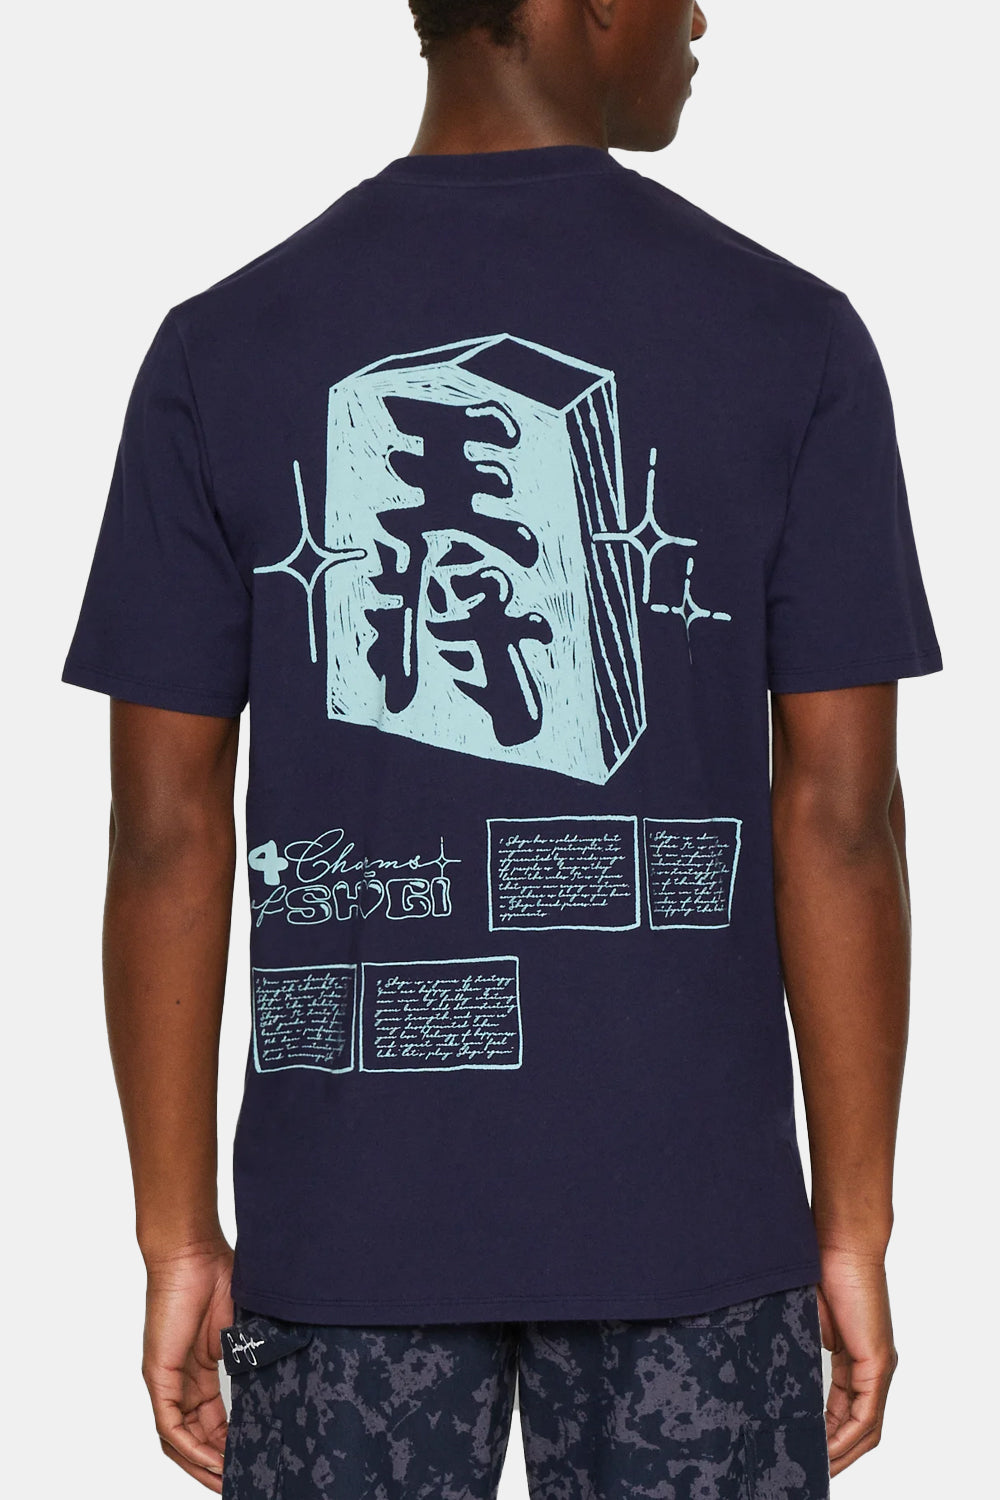 T-shirt japonais Edwin Sun Supply (mer de Béring)